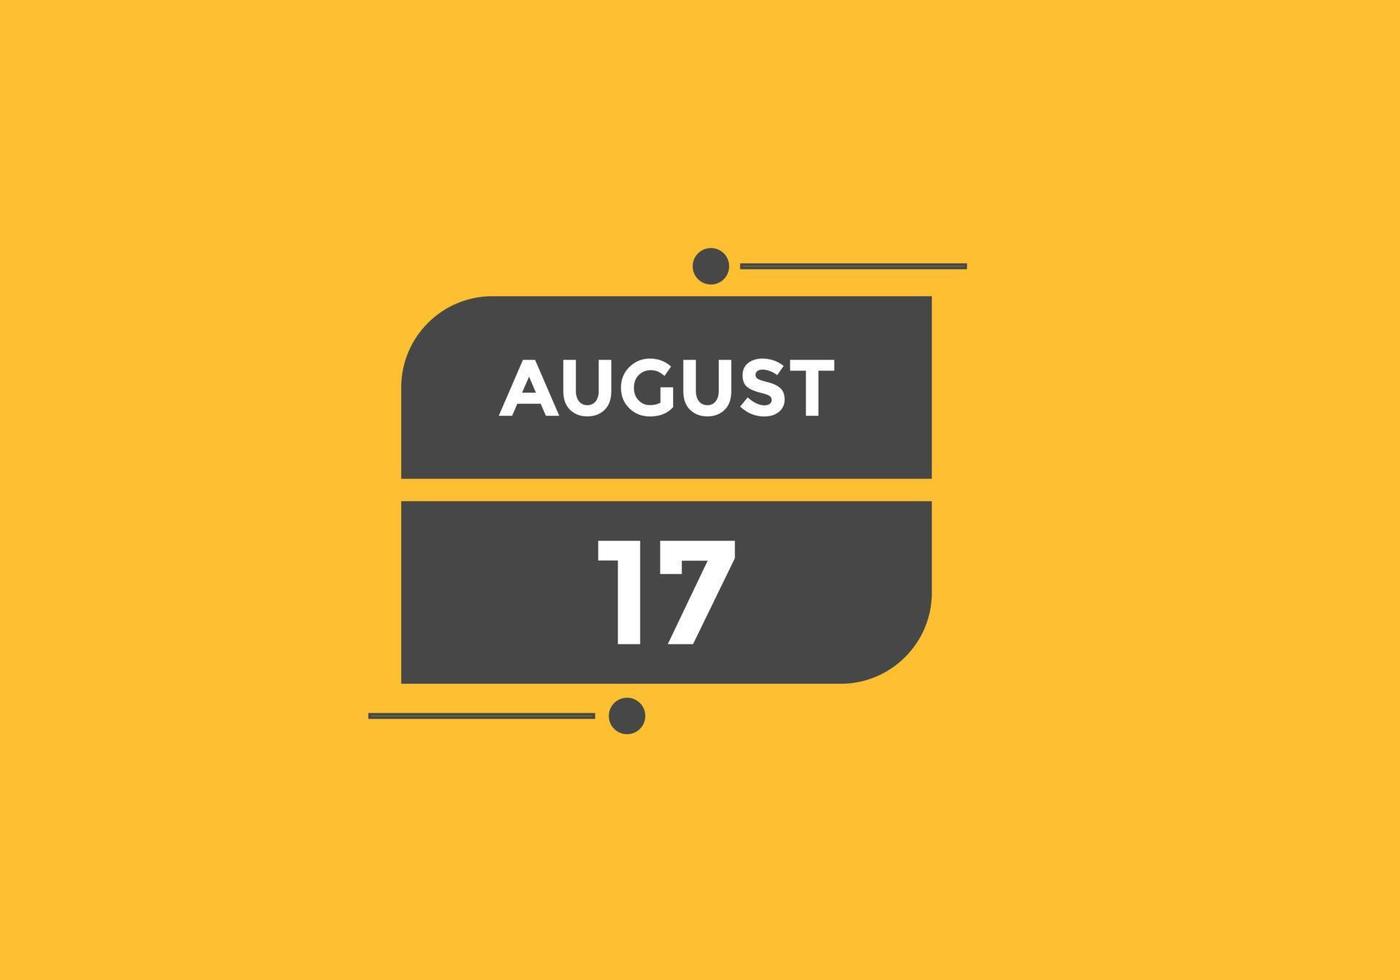 agosto 17 calendario promemoria. 17 ° agosto quotidiano calendario icona modello. calendario 17 ° agosto icona design modello. vettore illustrazione